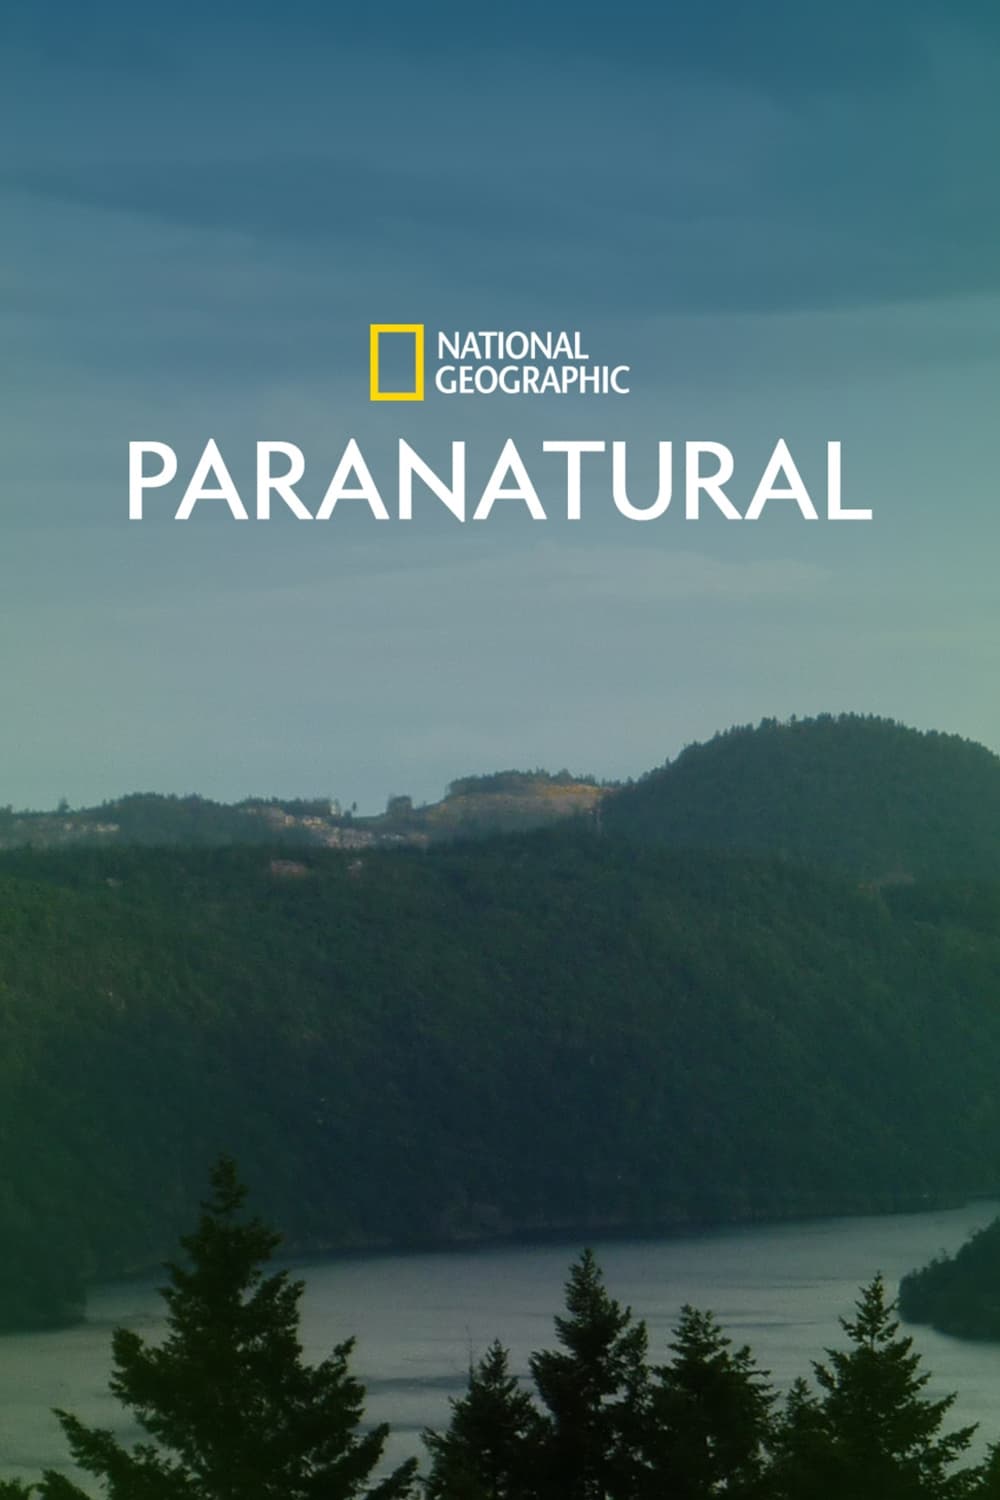 Paranatural TV Shows About Armageddon